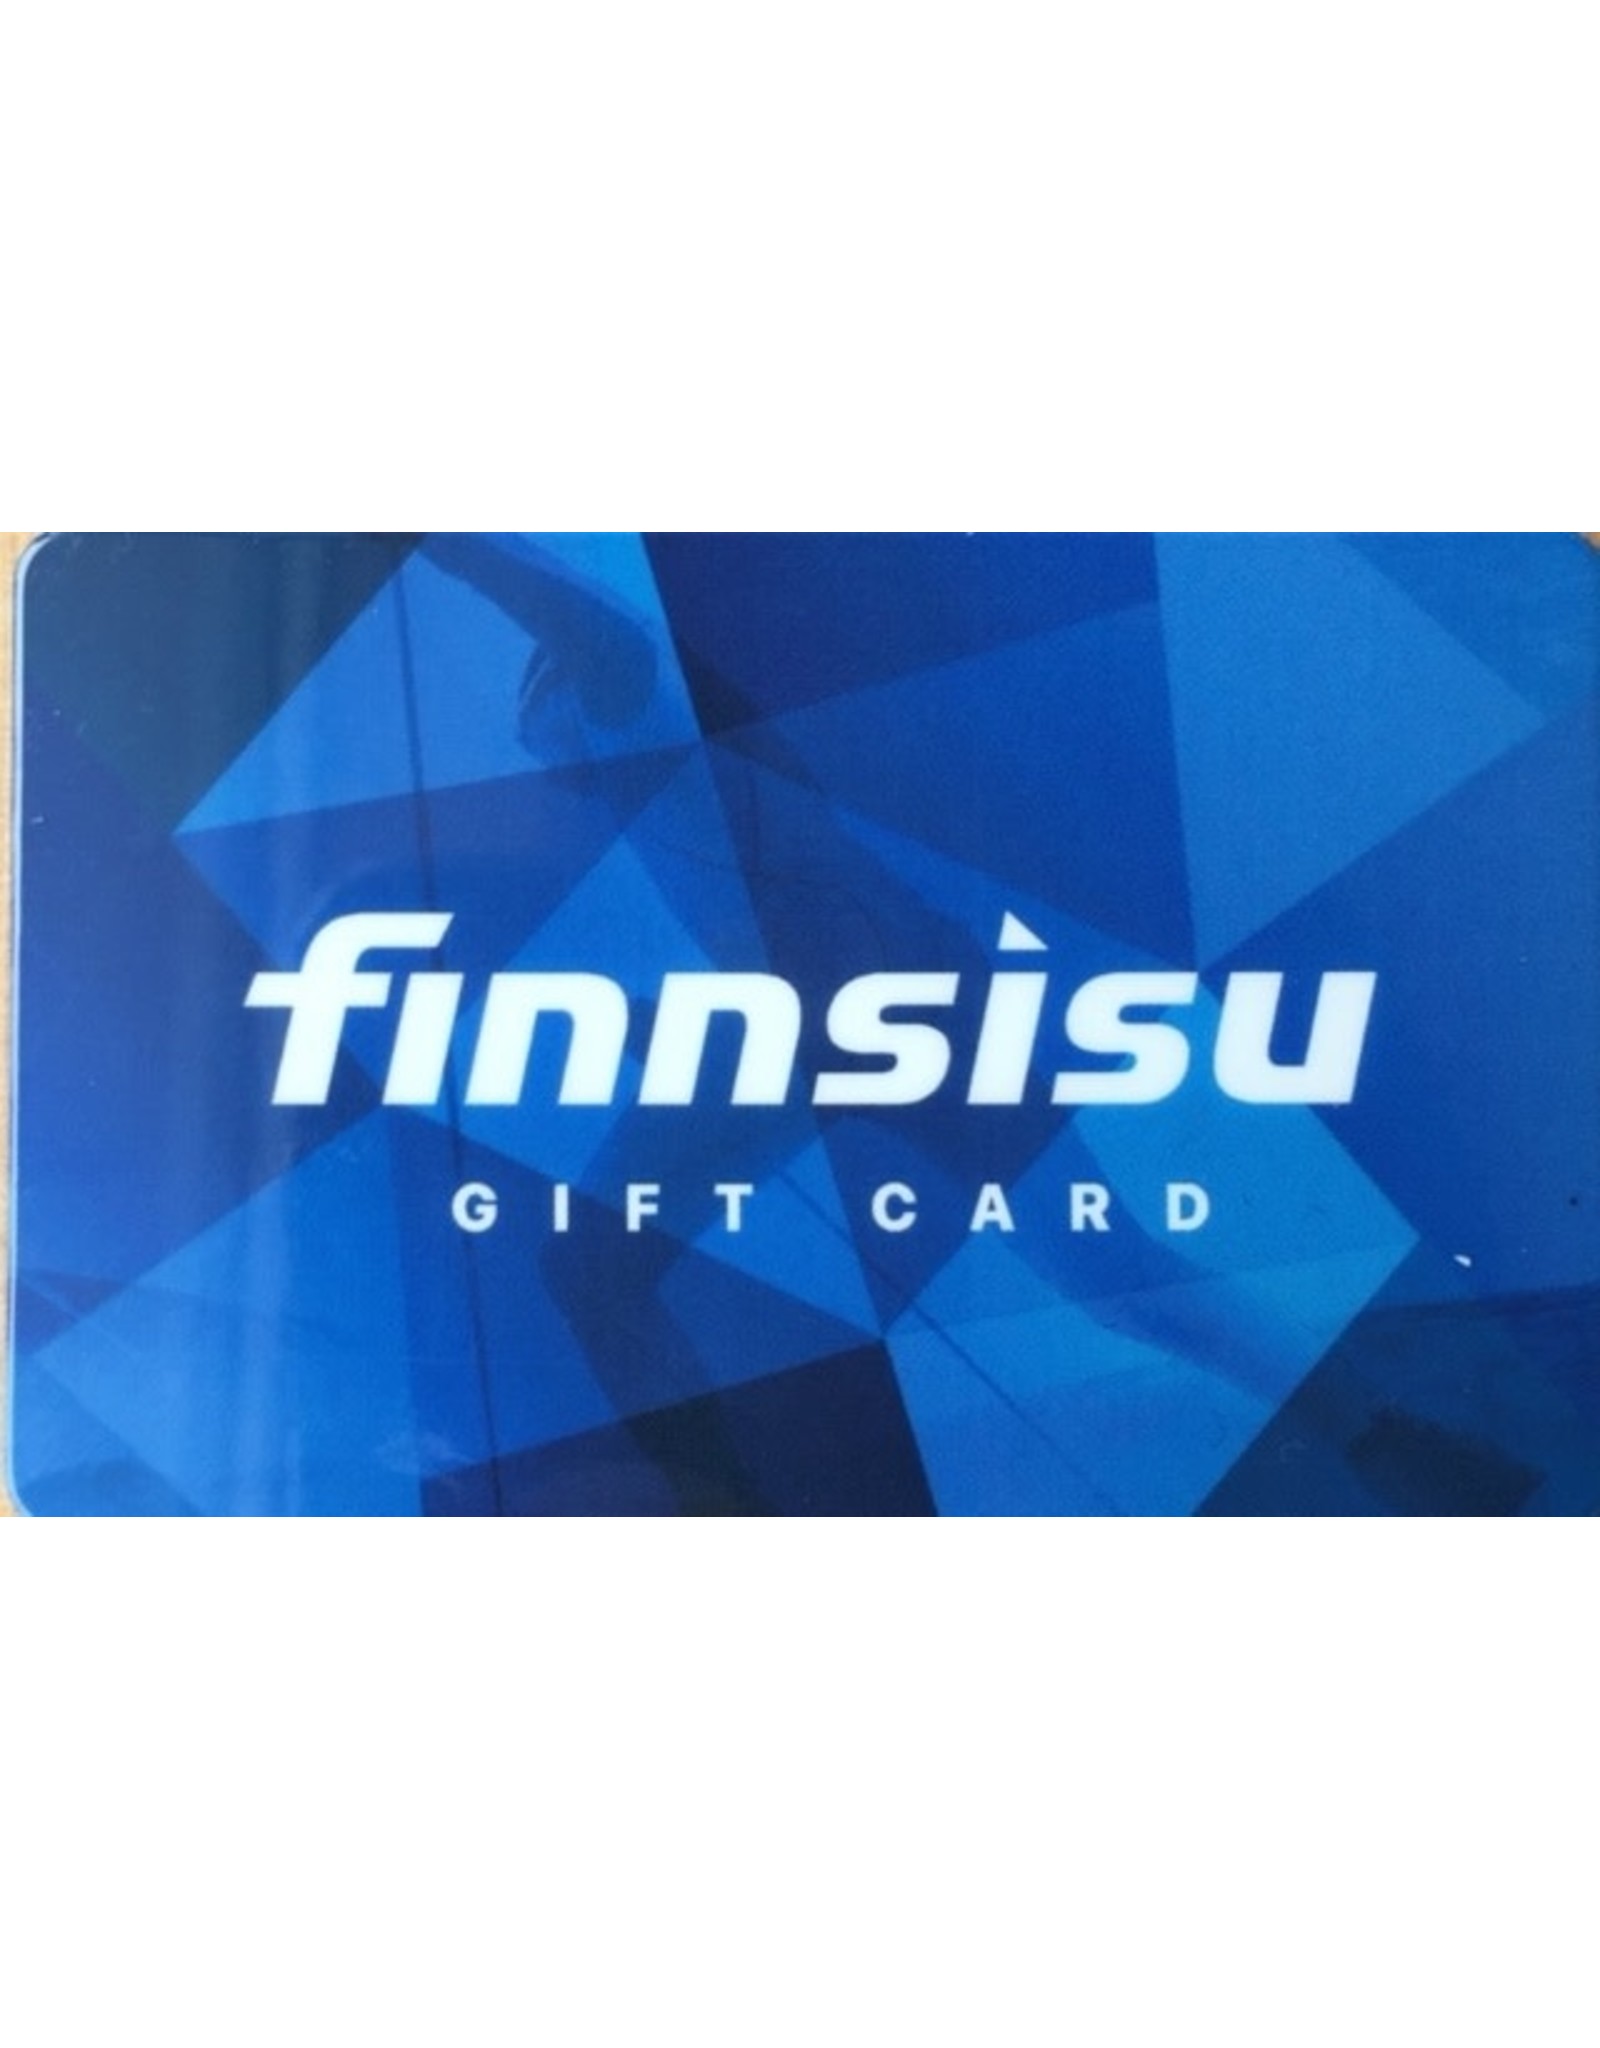 Finn Sisu Gift Card